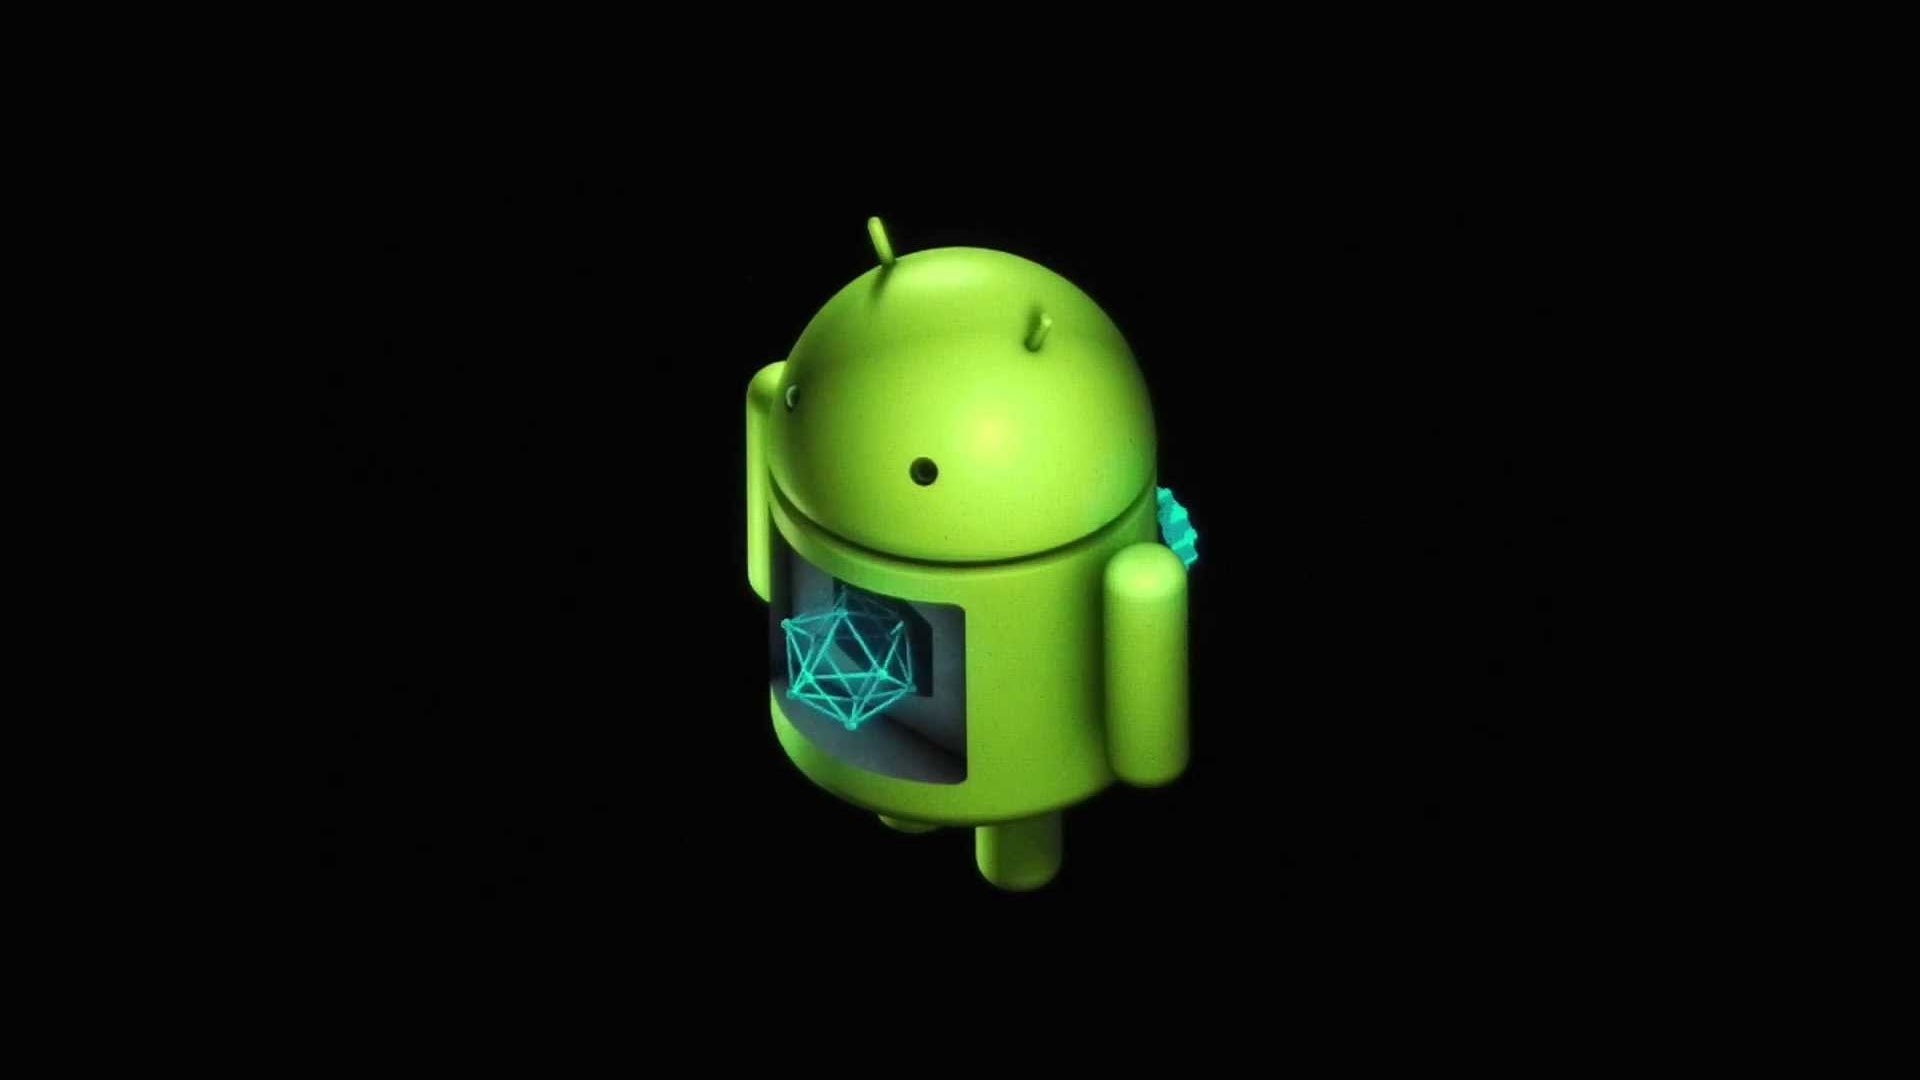 Tải app IWIN dành cho điện thoại Android